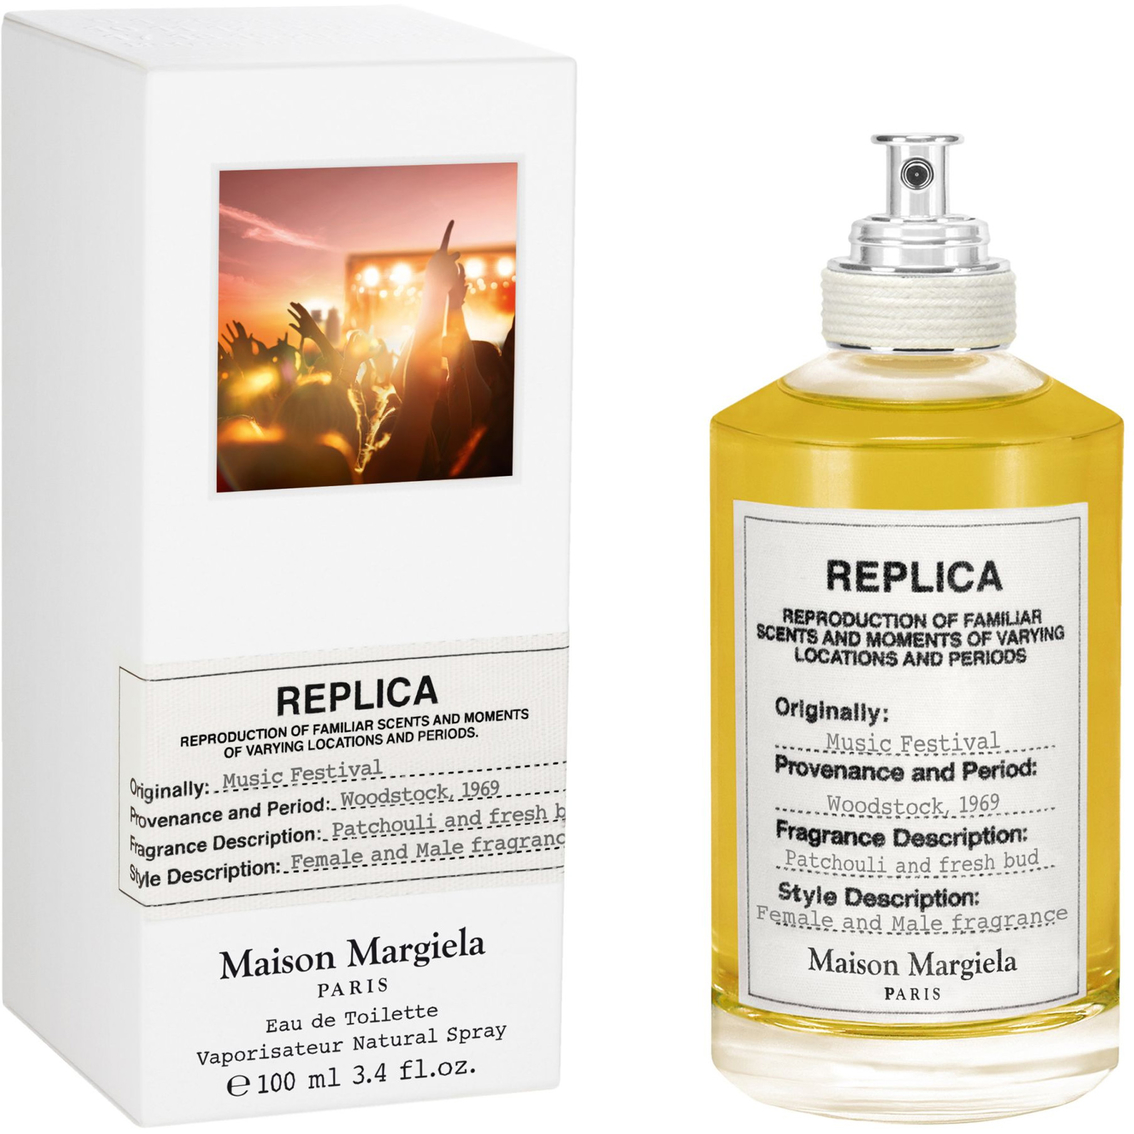 Maison Margiela Replica Music Festival V100ml | Women's Fragrances ...